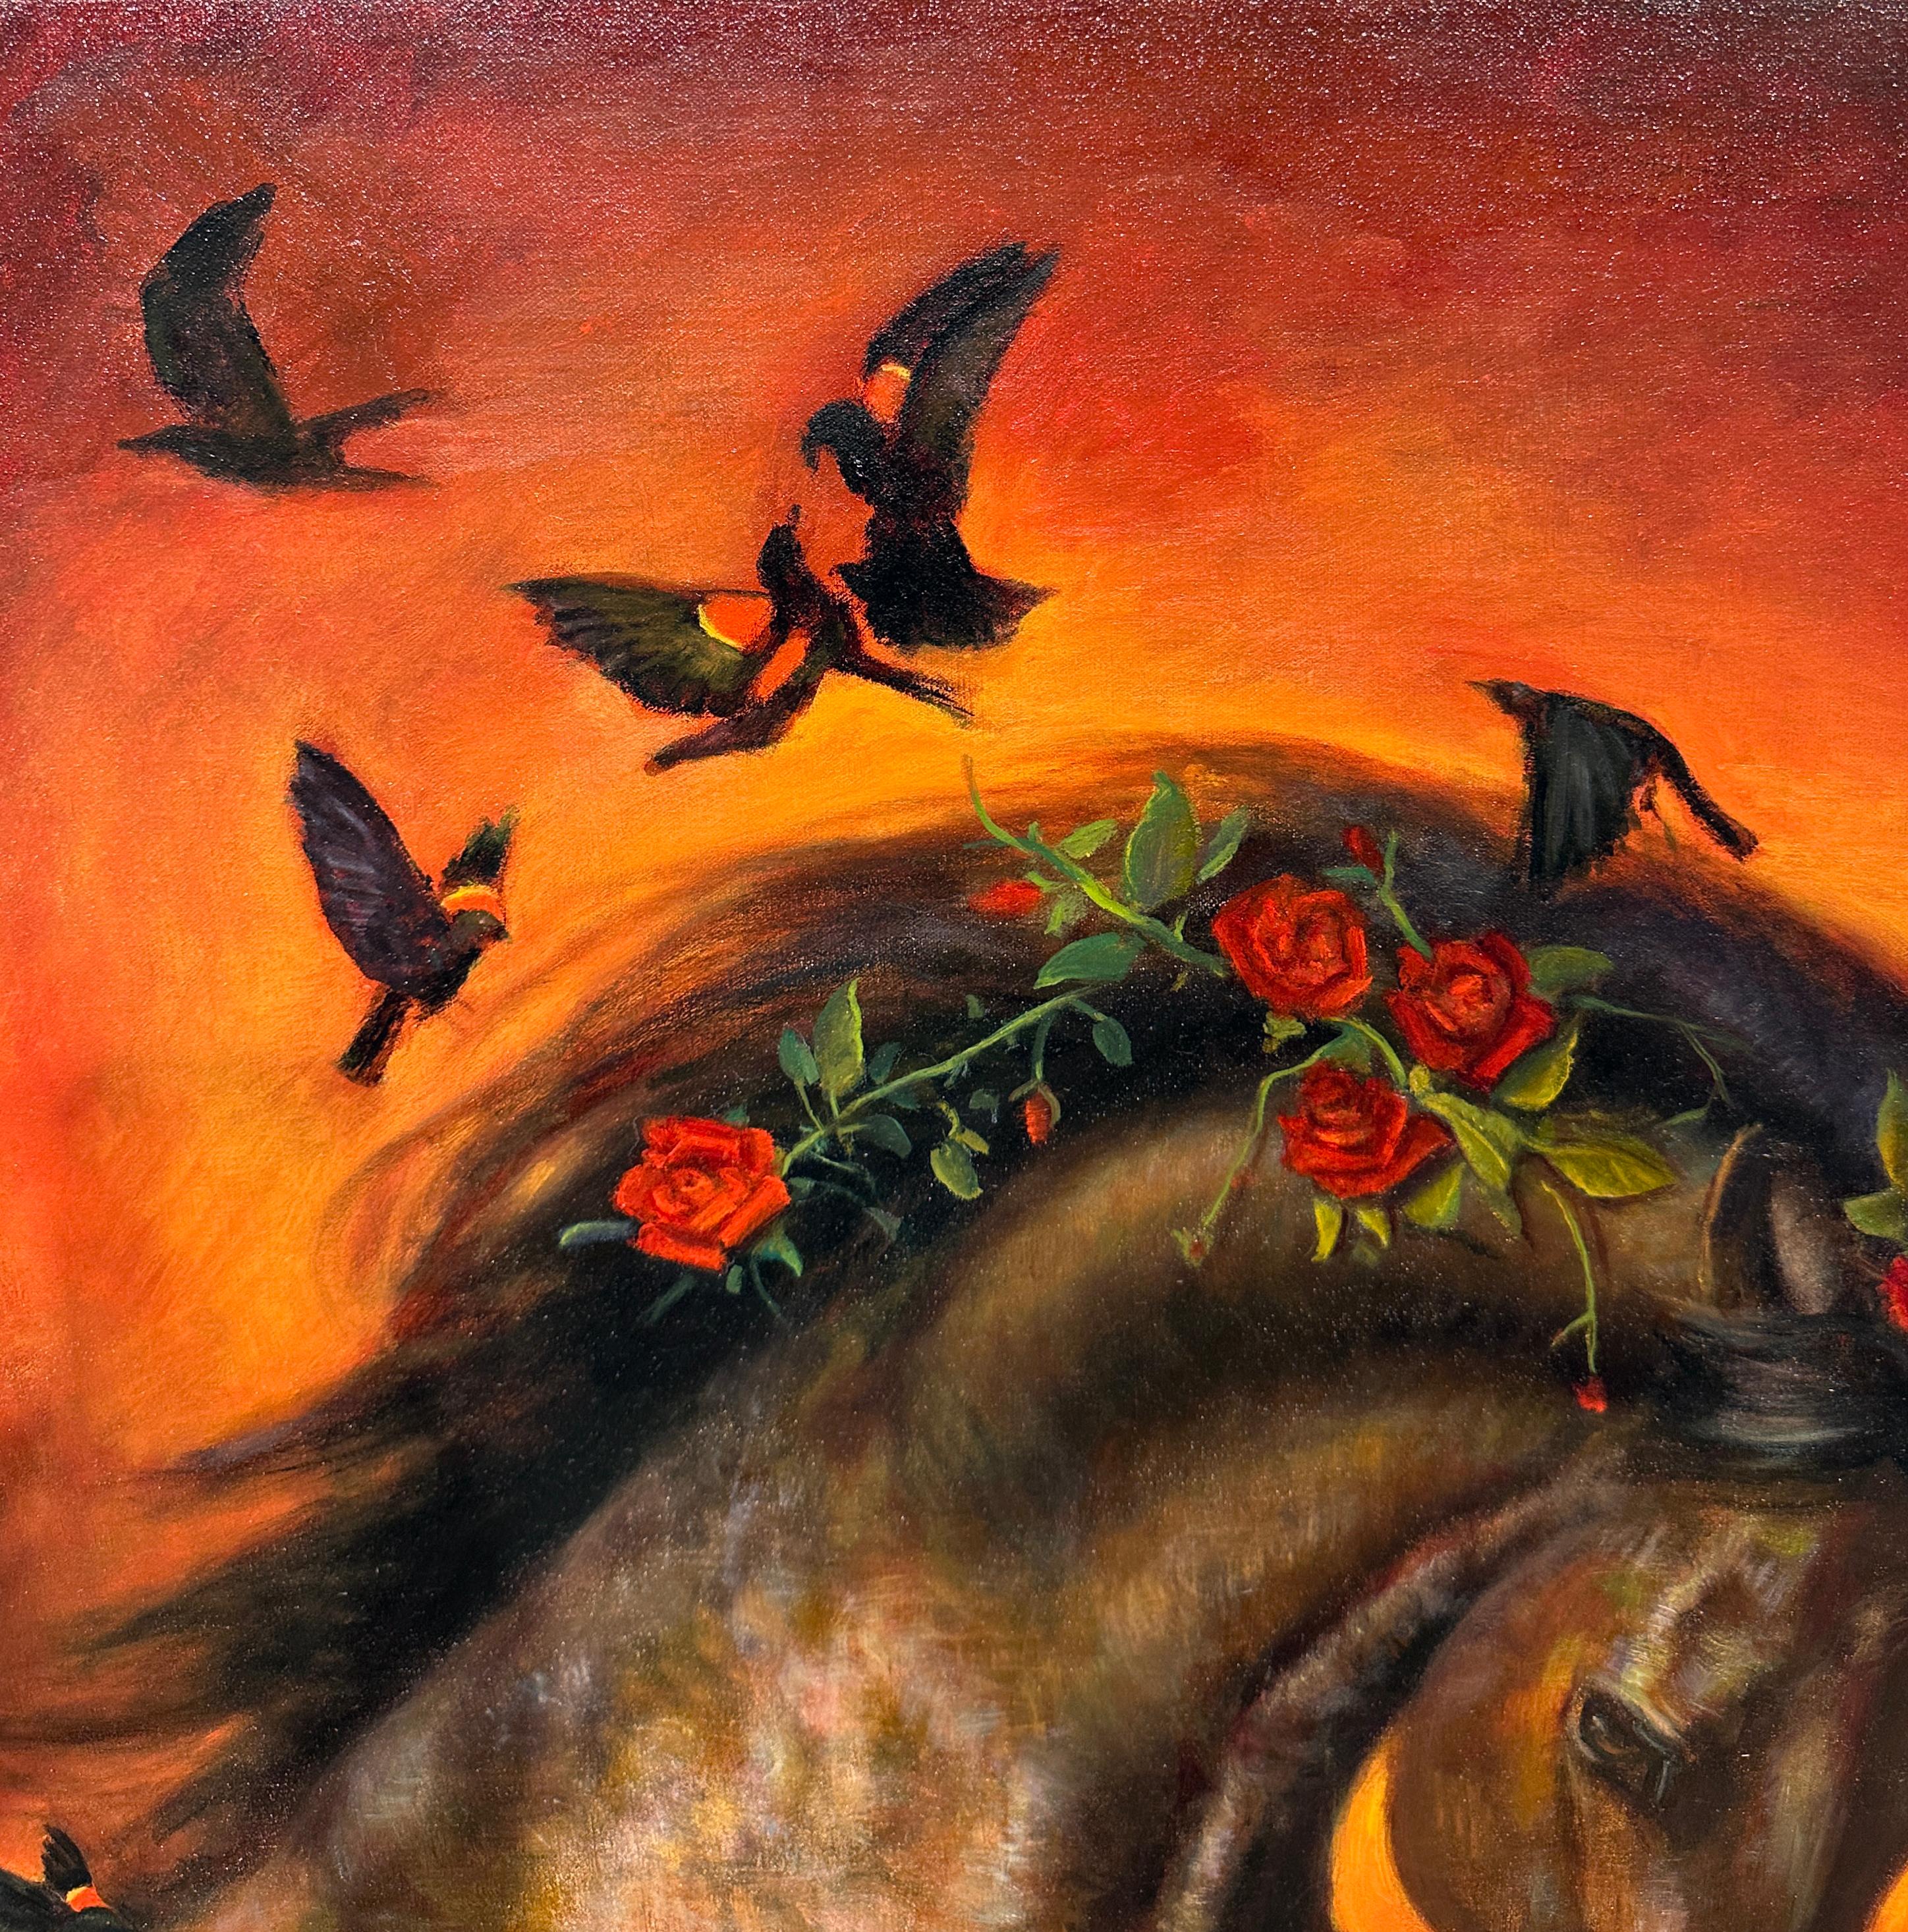 Burning Desire - Sable Mare avec fleurs et papillons et fond rose ambré - Marron Figurative Painting par Rose Freymuth-Frazier